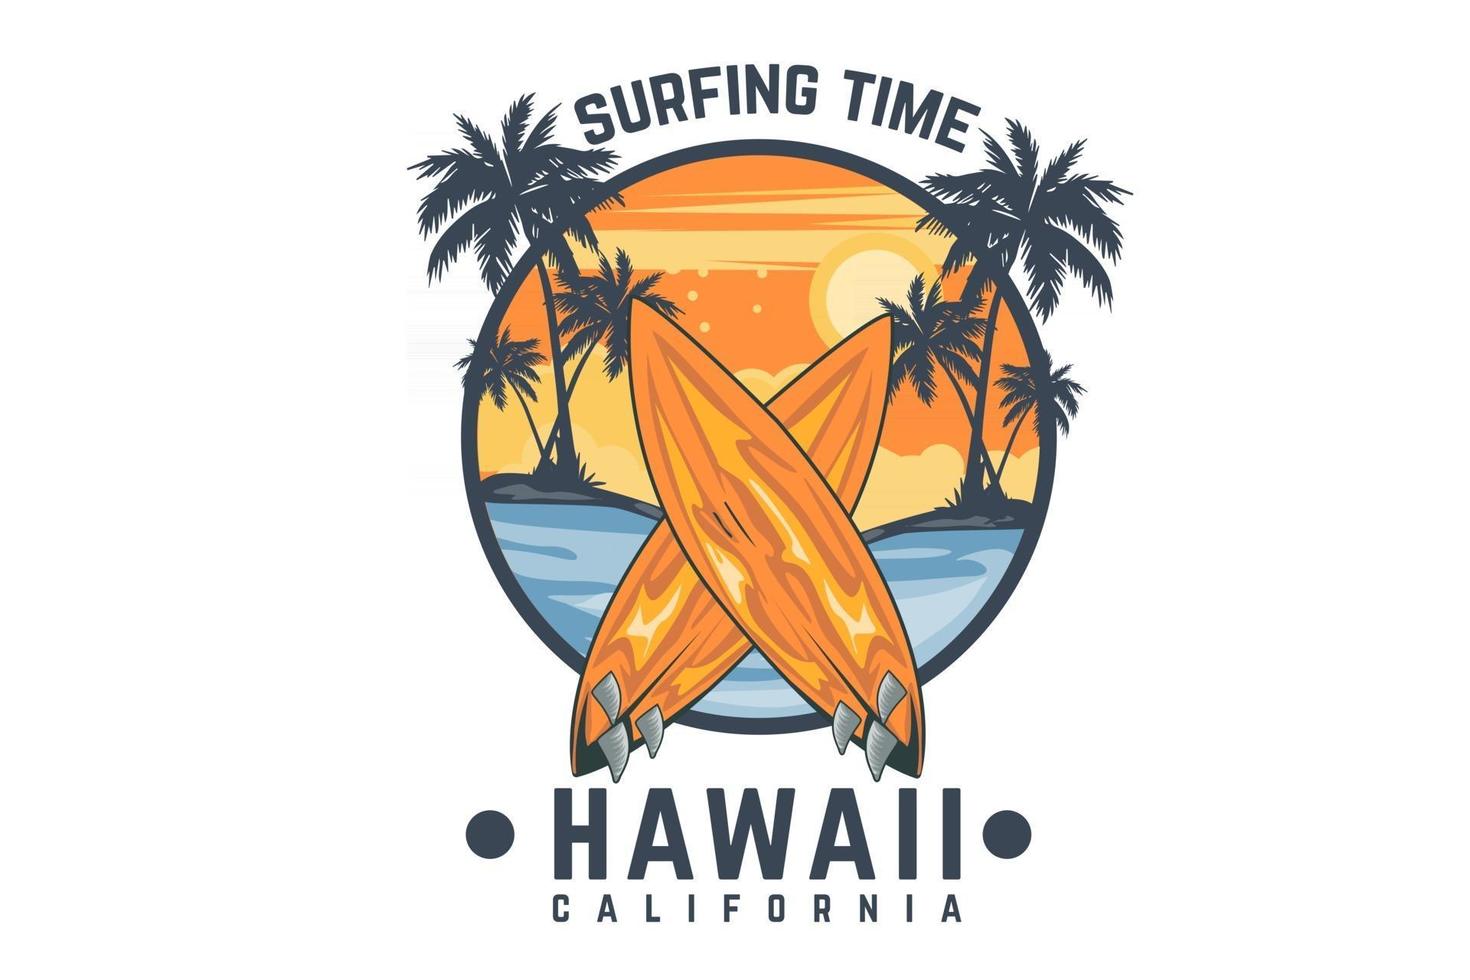 Surfzeit Hawaii Kalifornien Design vektor